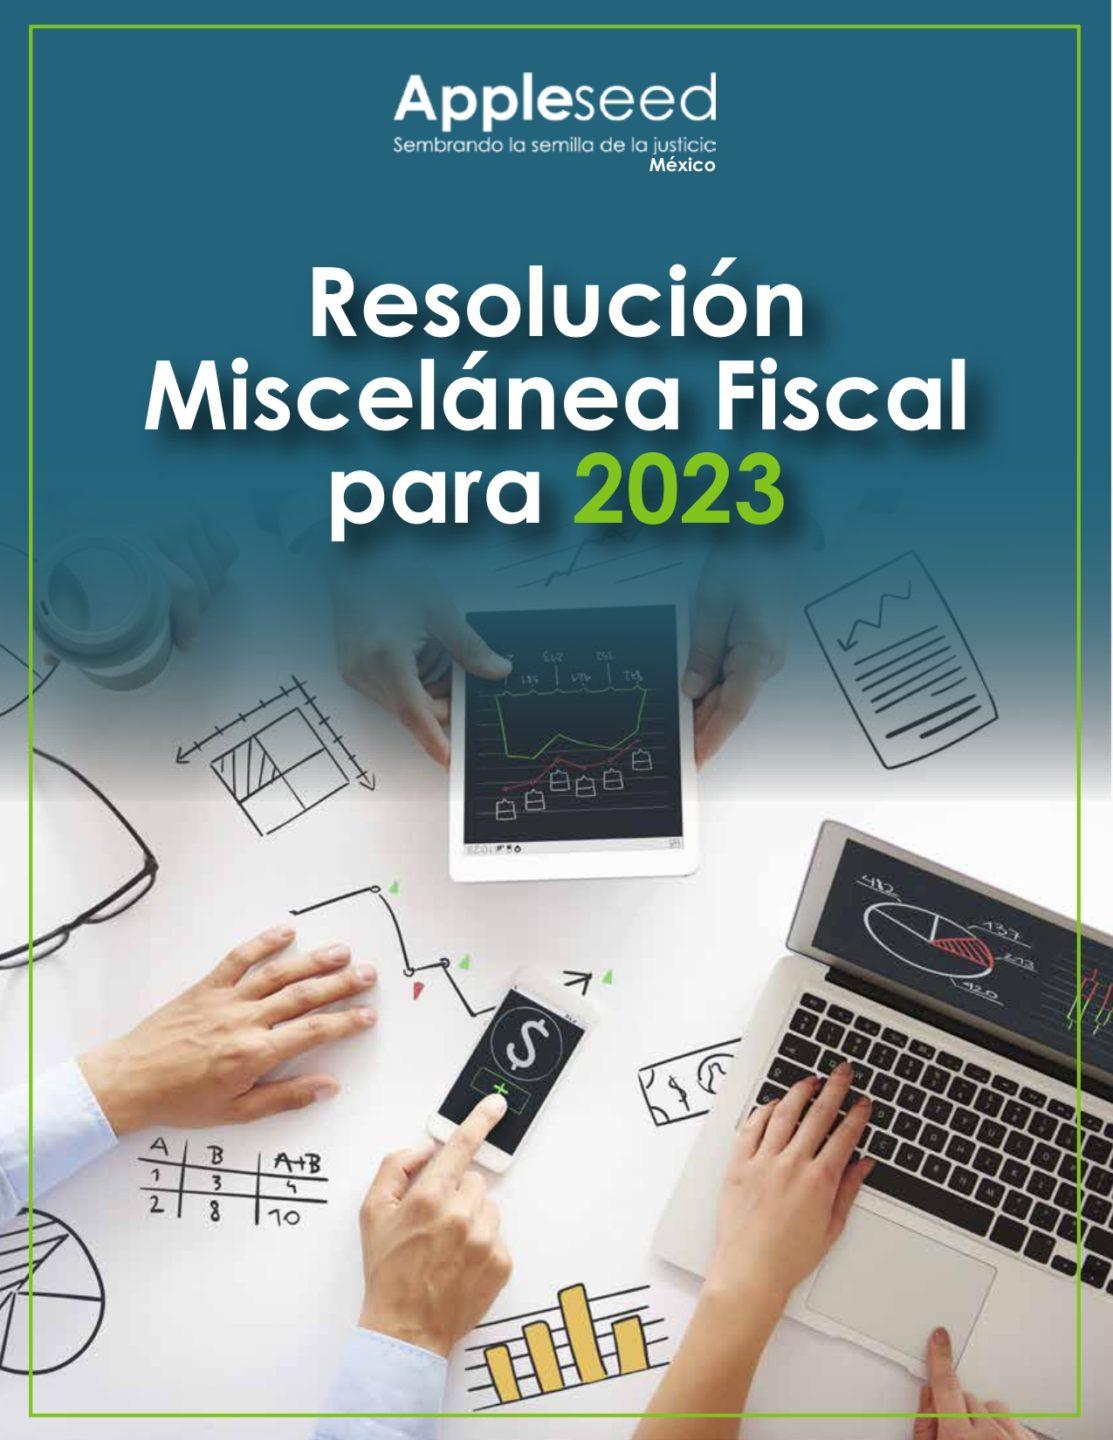 01. Resolución Miscelánea Fiscal para 2023